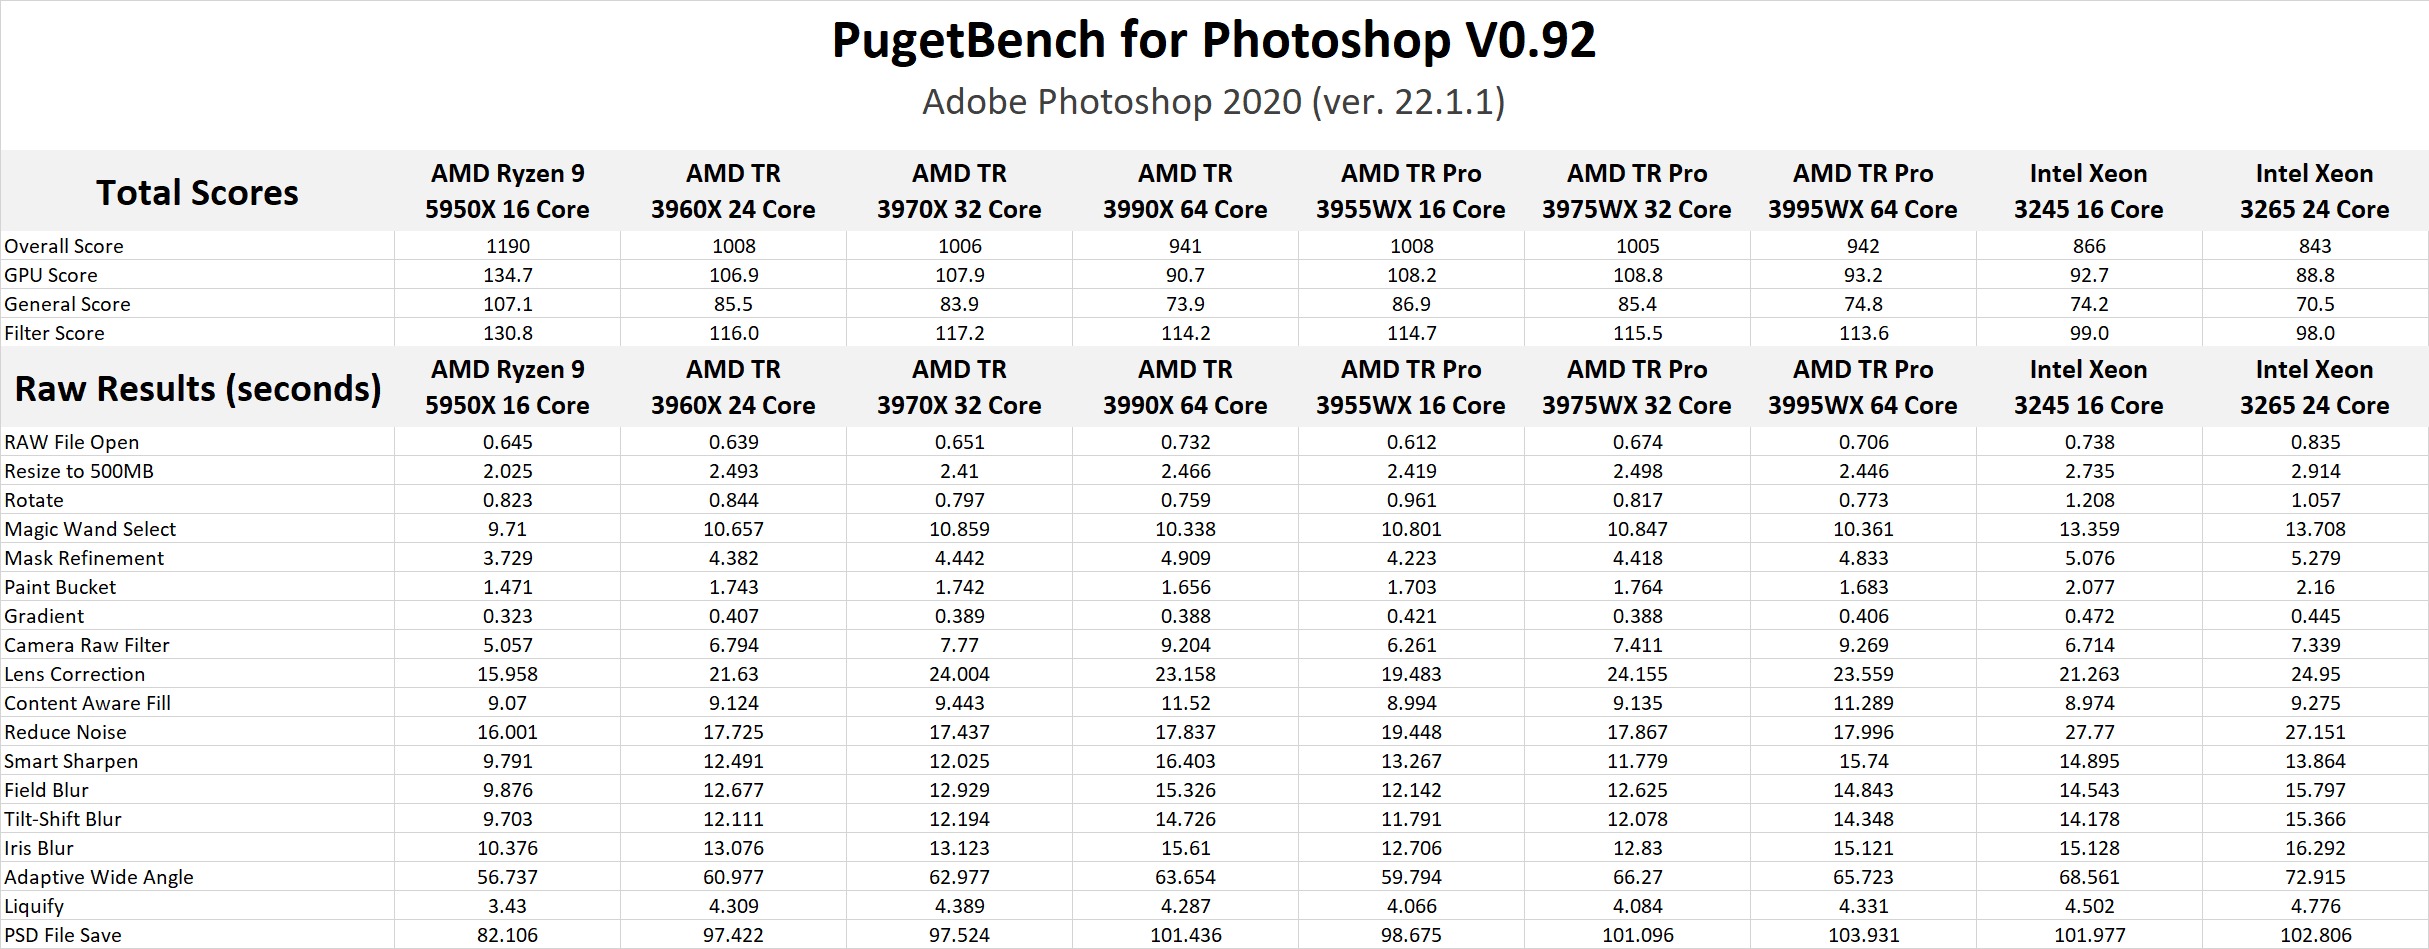 AMD Ryzen Threadripper PRO 3000 Series Photoshop Benchmark Results